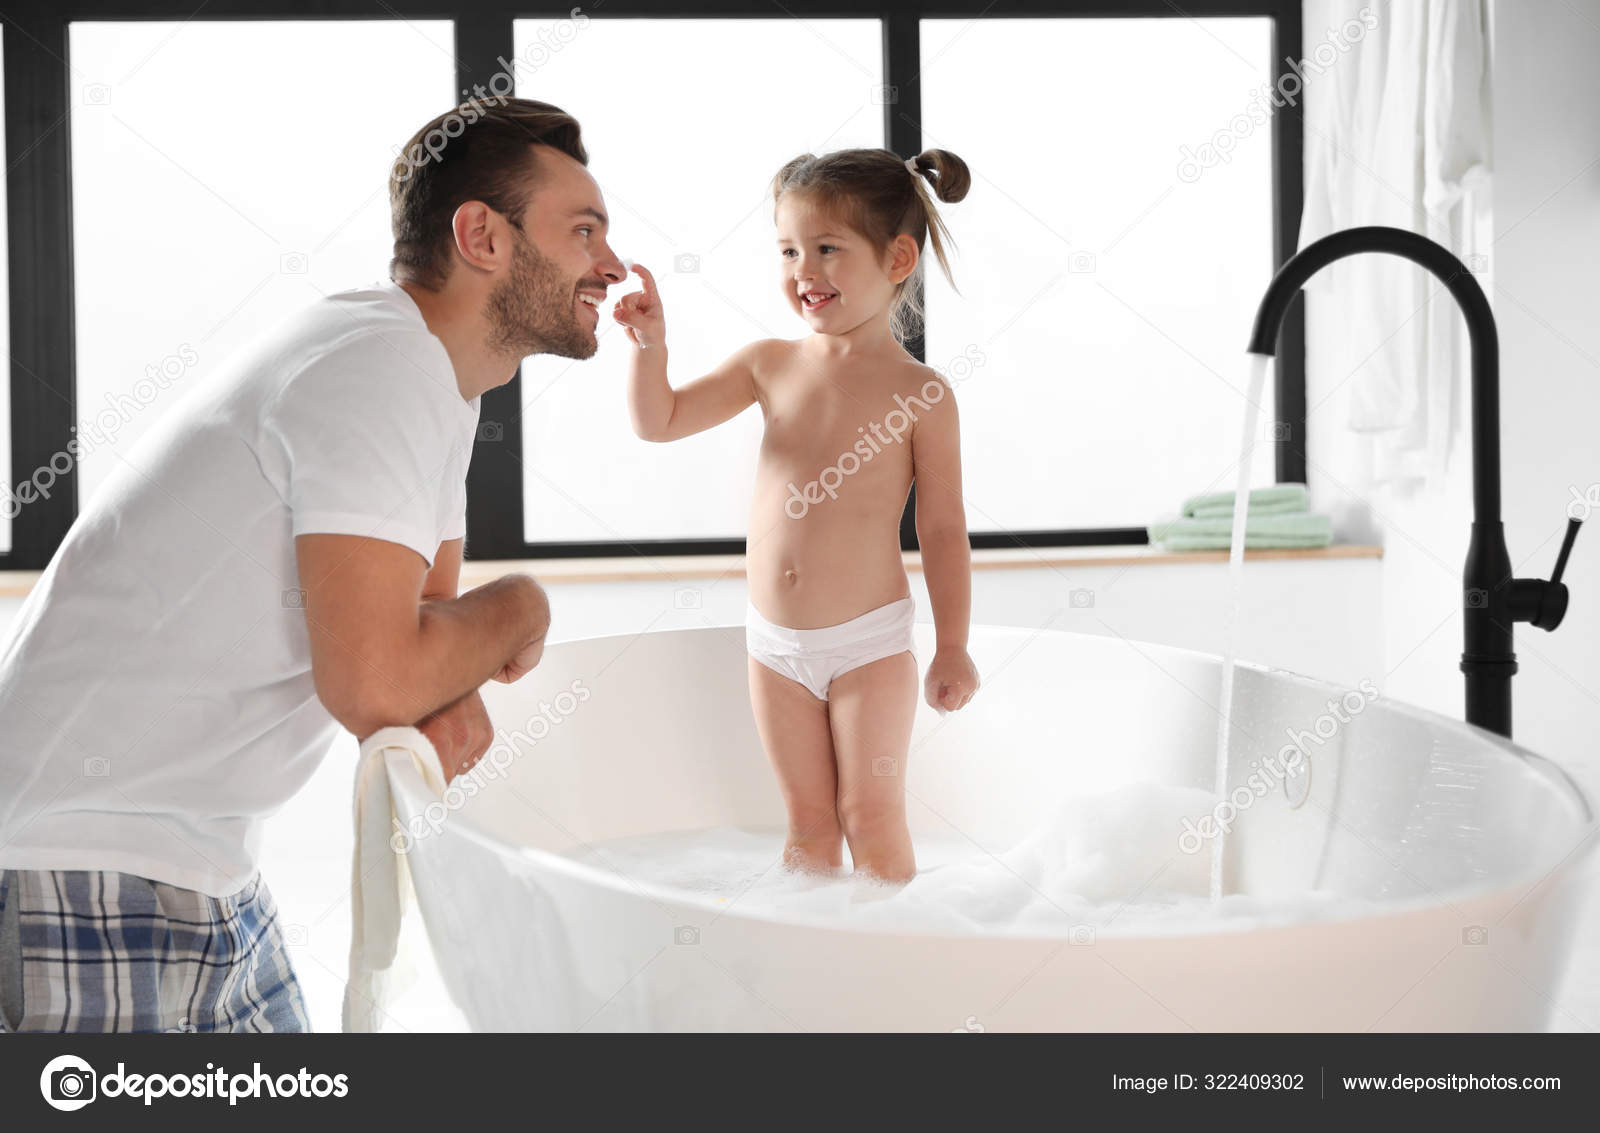 как купаться в бани голыми с детьми фото 47